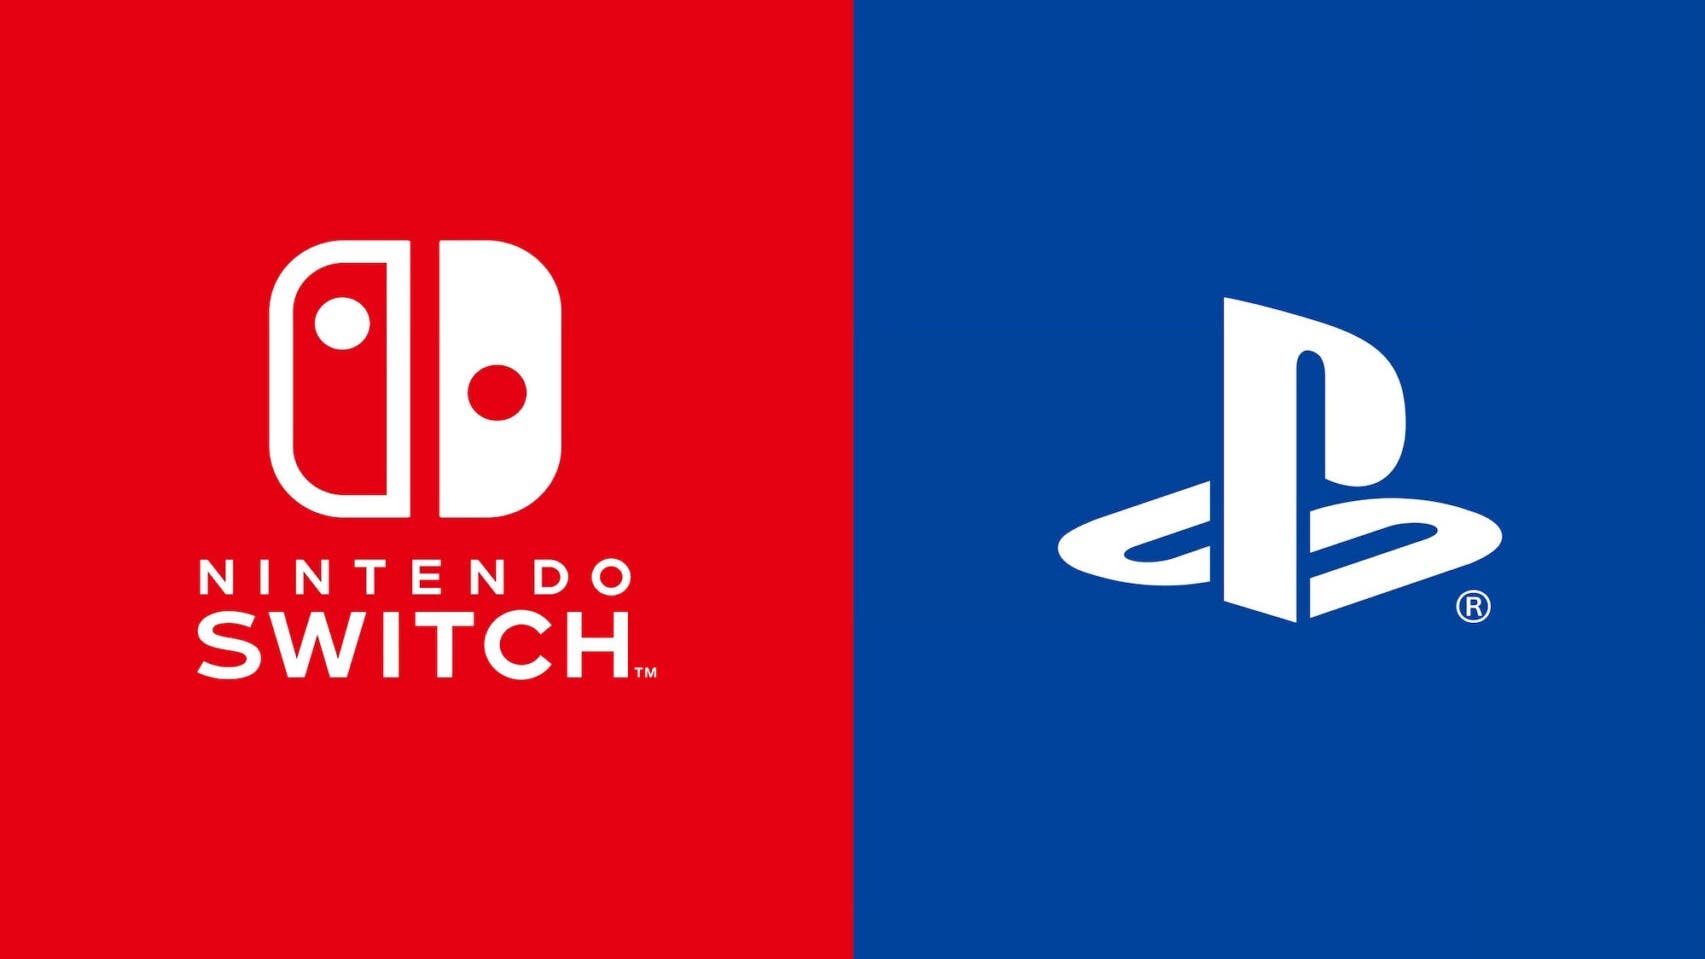 Nintendo responde a la subida de precio de PlayStation 5: “No tenemos planes de aumentar el precio de Switch”